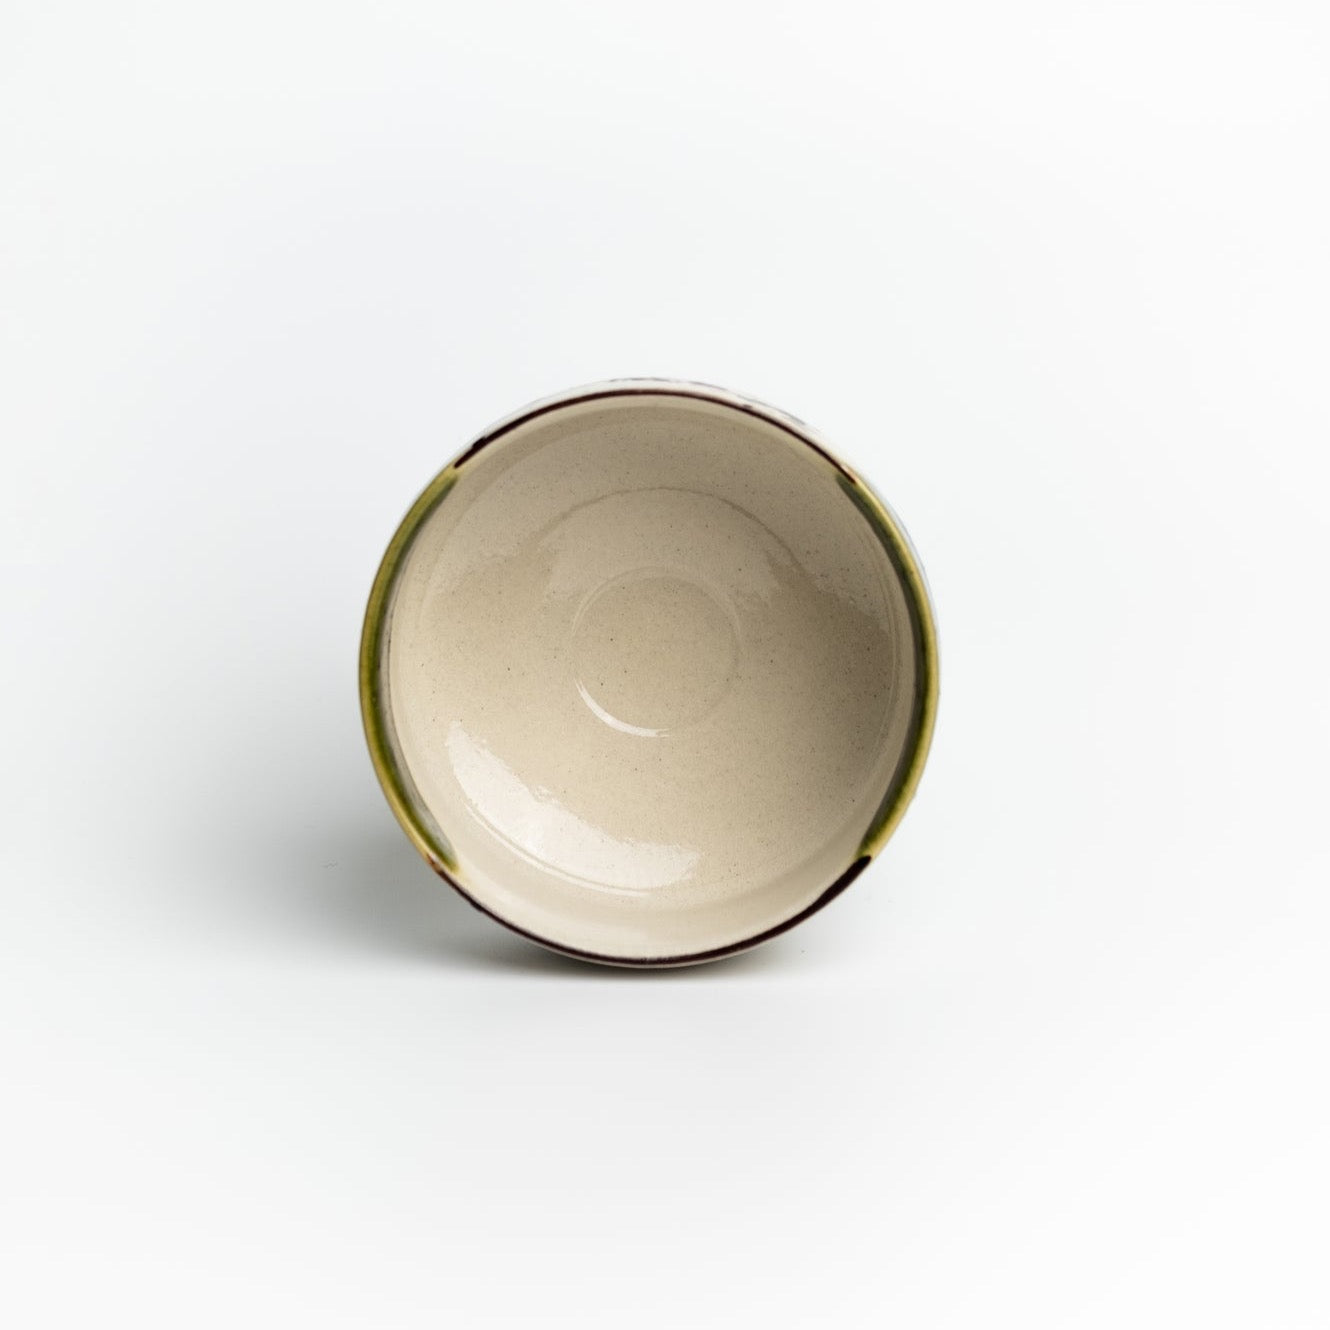 Чаван (тяван) - чаша для матча, ручної робити, японського майстра купити в Matcher.store